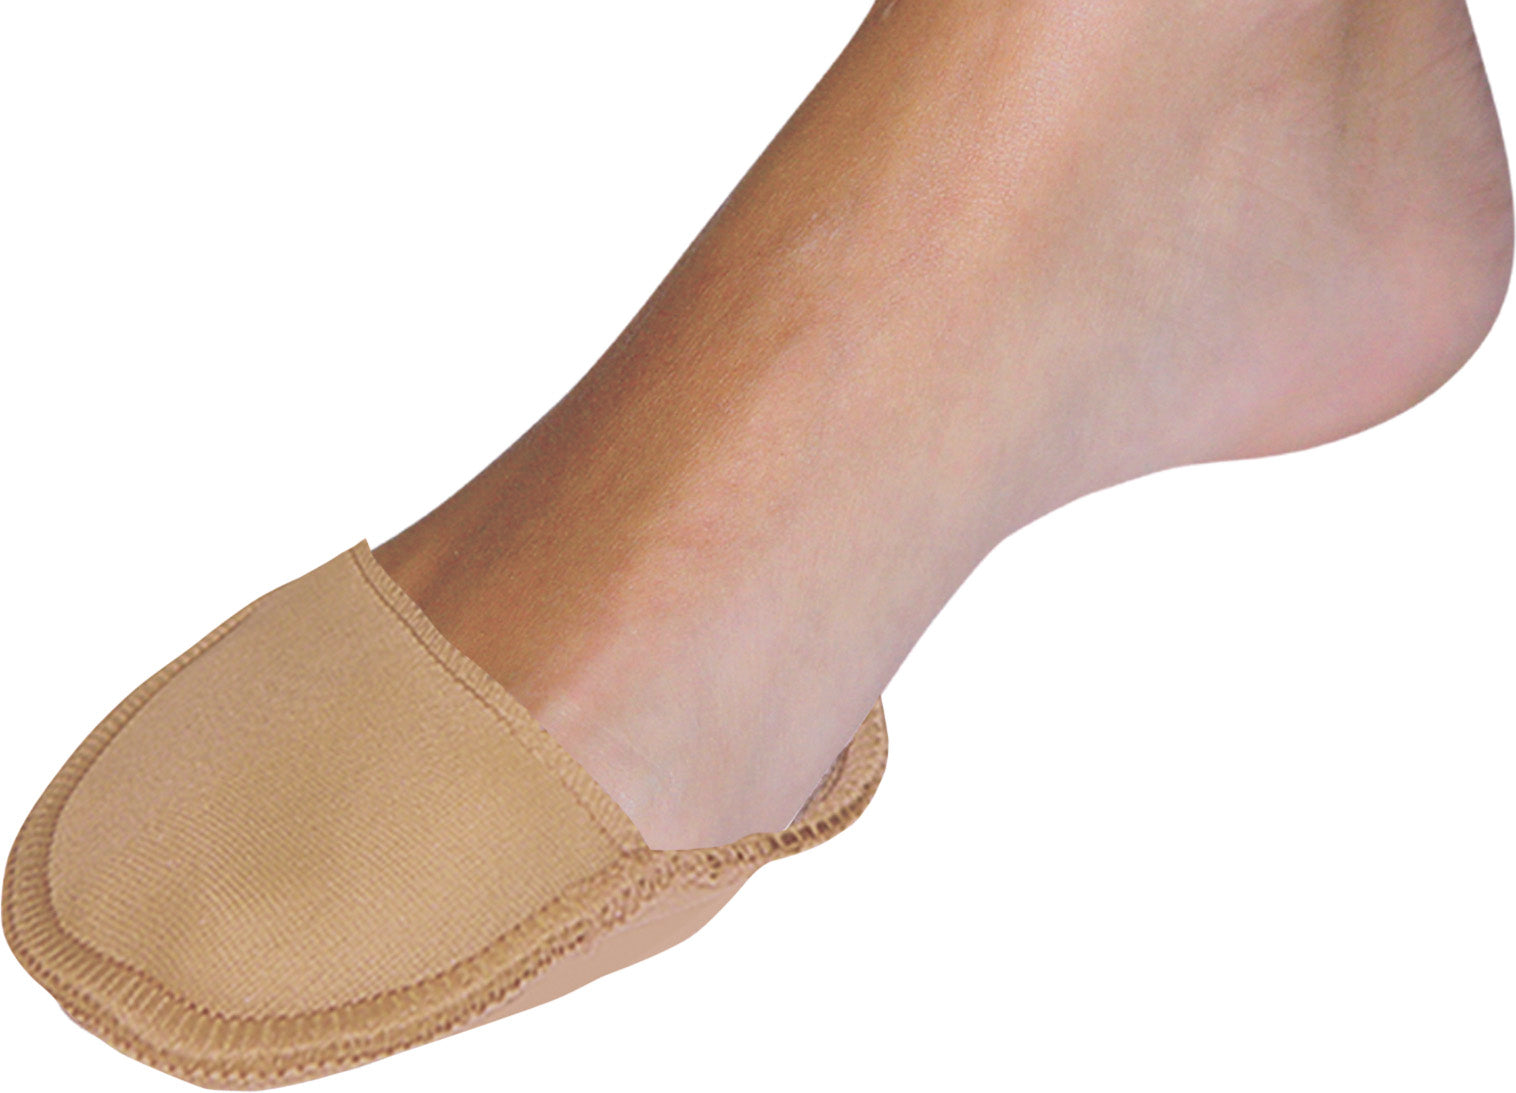 Protecteur avant pied en tissu - Disponible en deux tailles - 1 paire